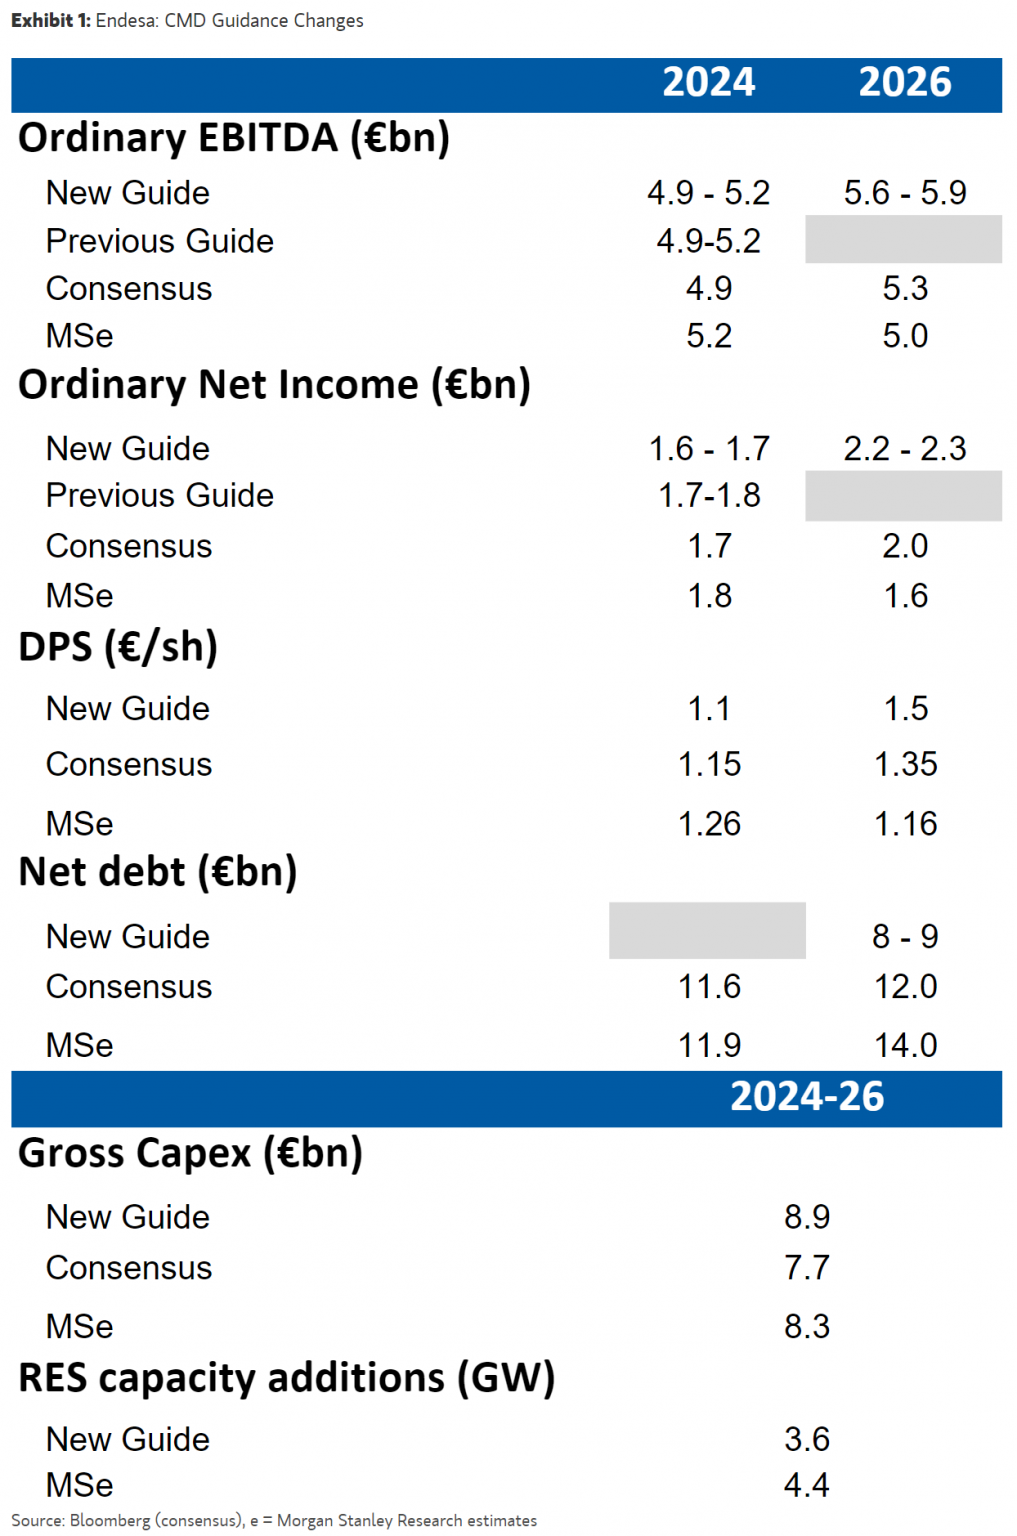 A pesar de que Endesa sube el dividendo de 2026 hasta 1,5 eur/acc, el